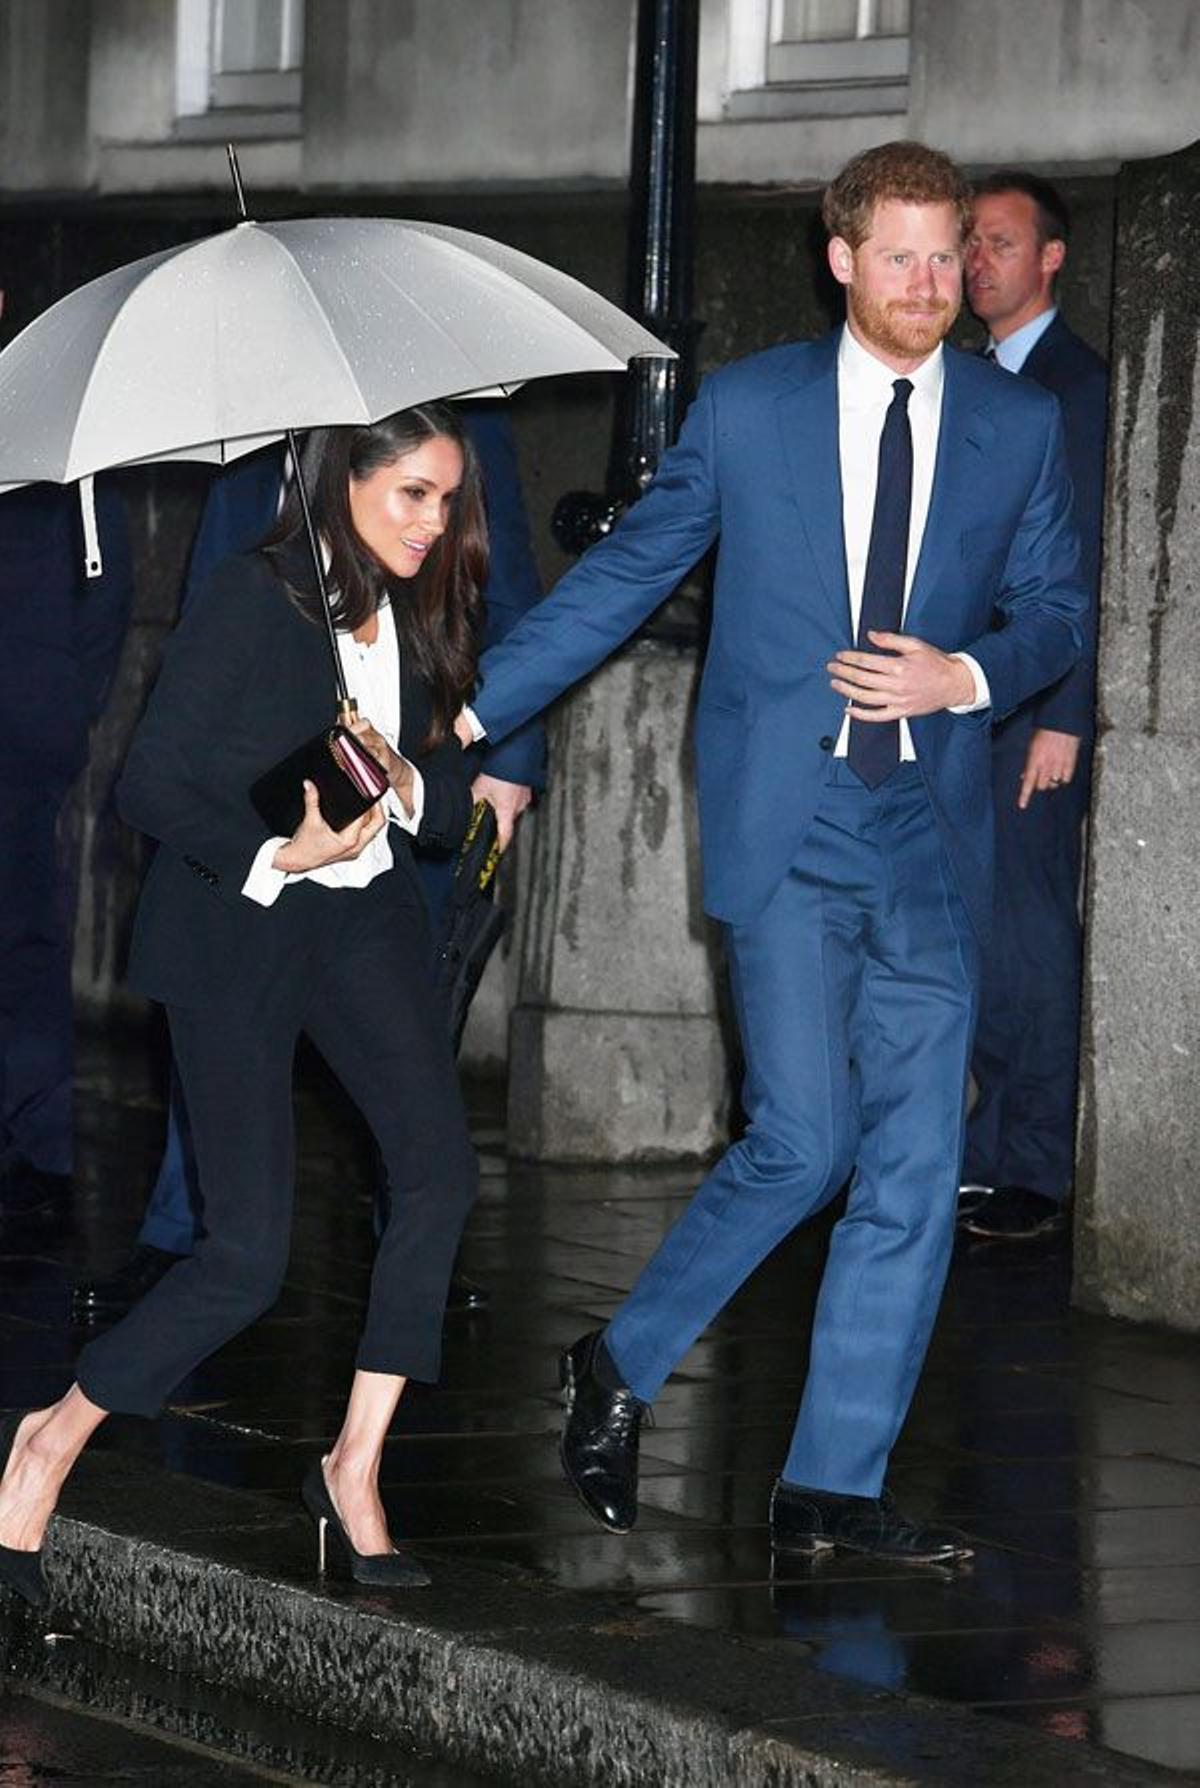 El look de Meghan Markle con traje de chaqueta de Alexander McQueen junto al príncipe Harry